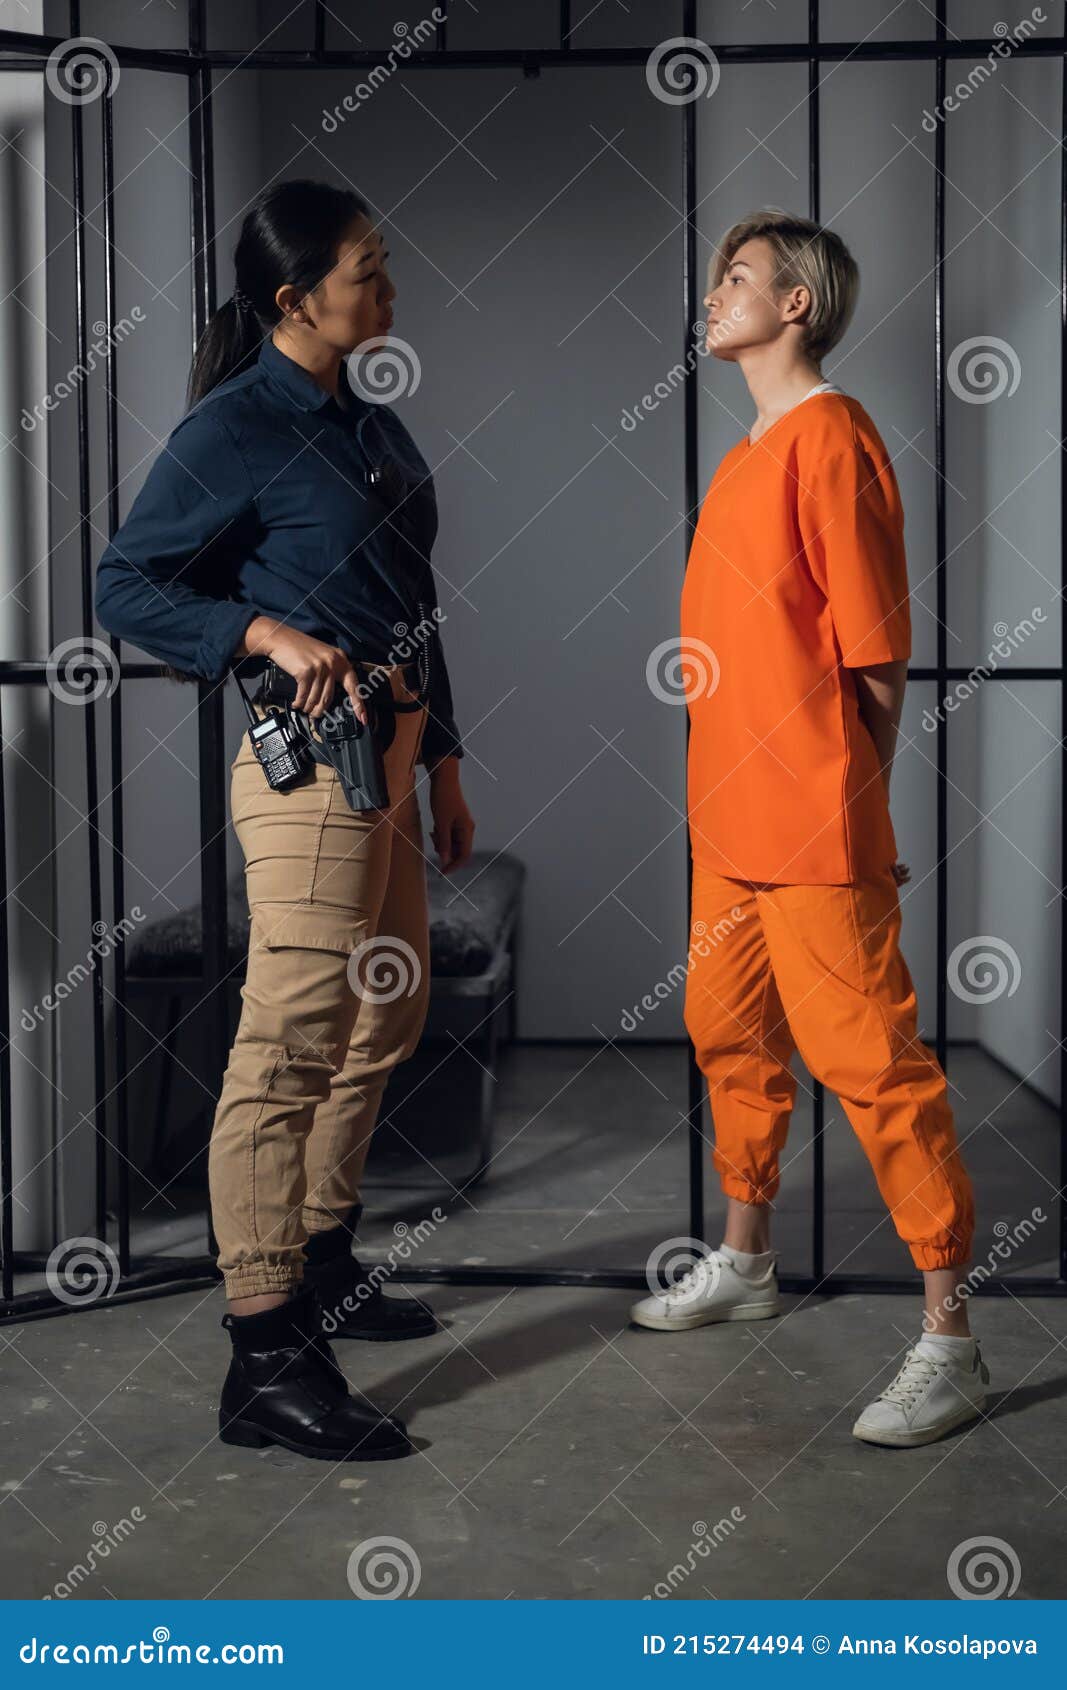 Prisoner Female